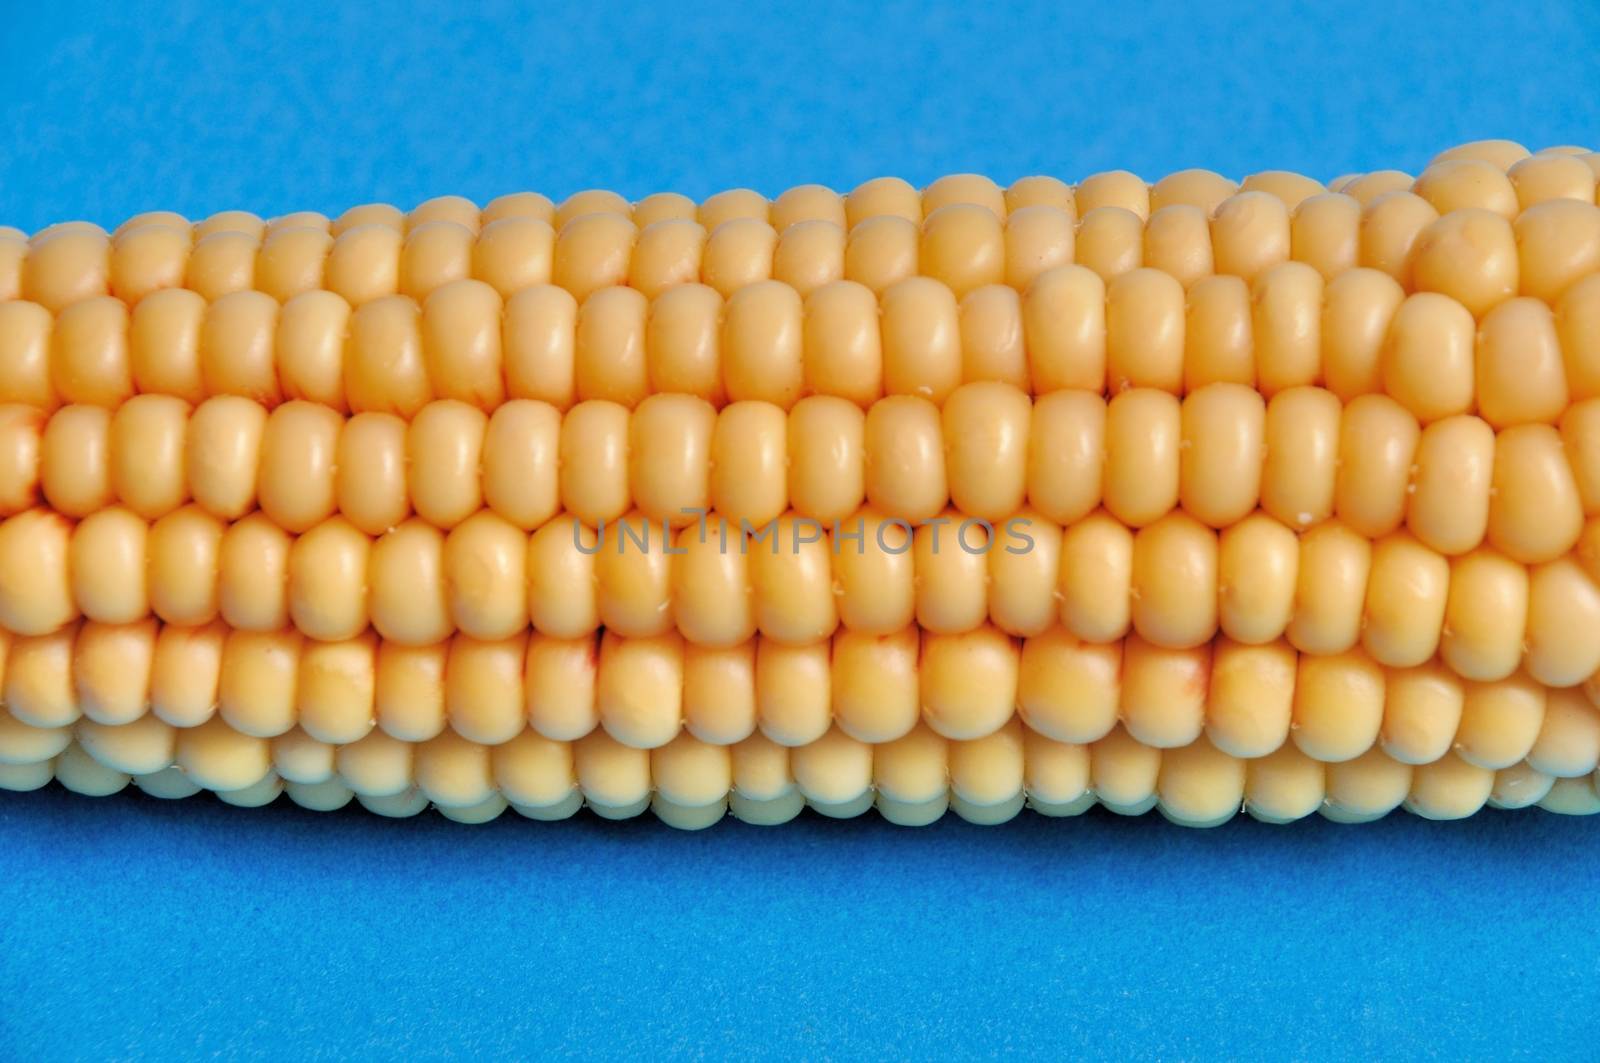 An ear of ripe corn by BZH22